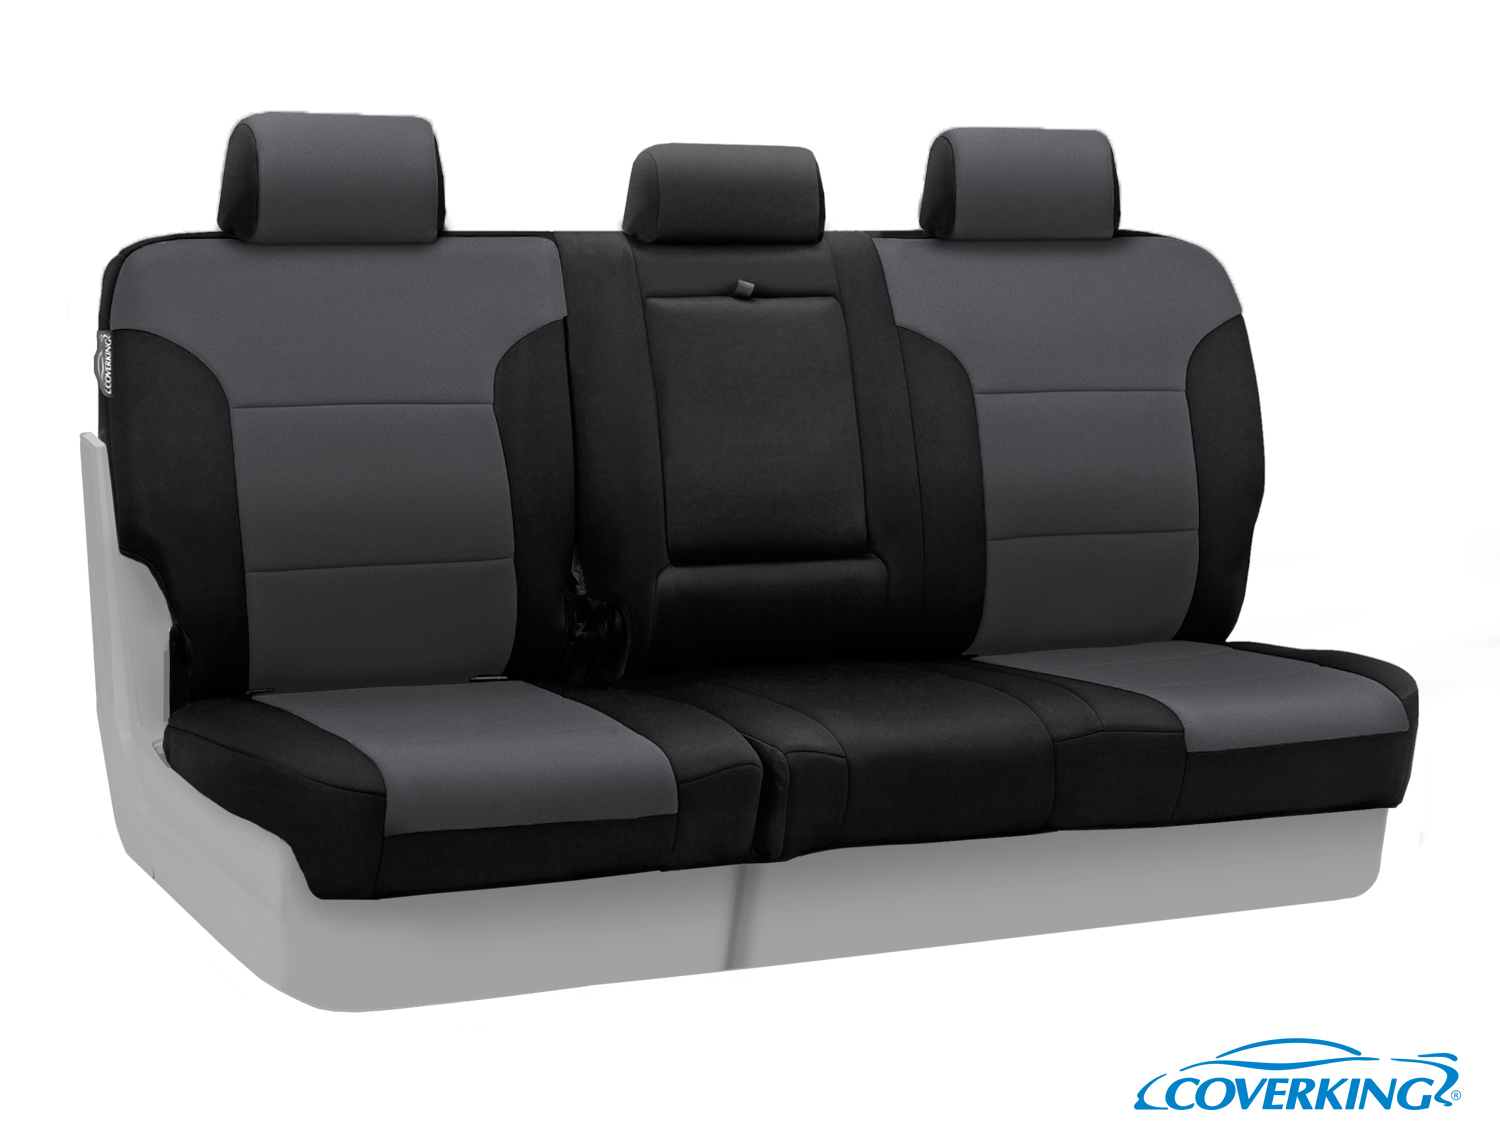 Coverking Neosupreme Rear Custom Car Seat Cover For GMC 2014-2018 Sierra 15...